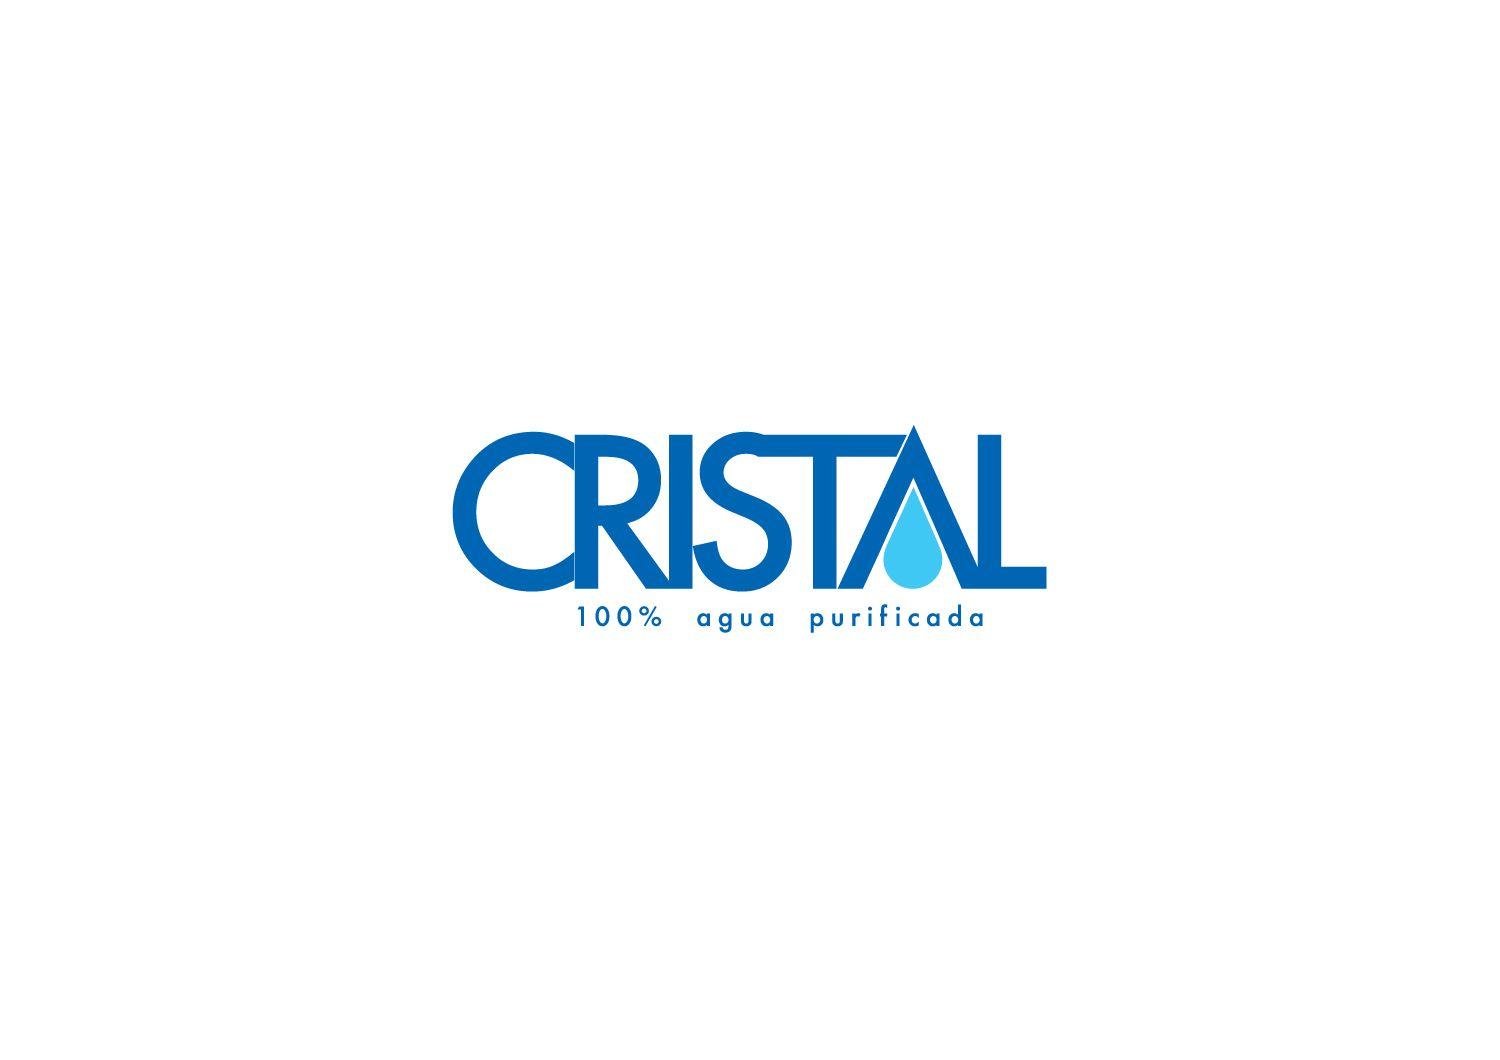 Modern Water Logo - Bold, Modern, Water Company Logo Design for CRISTAL% agua